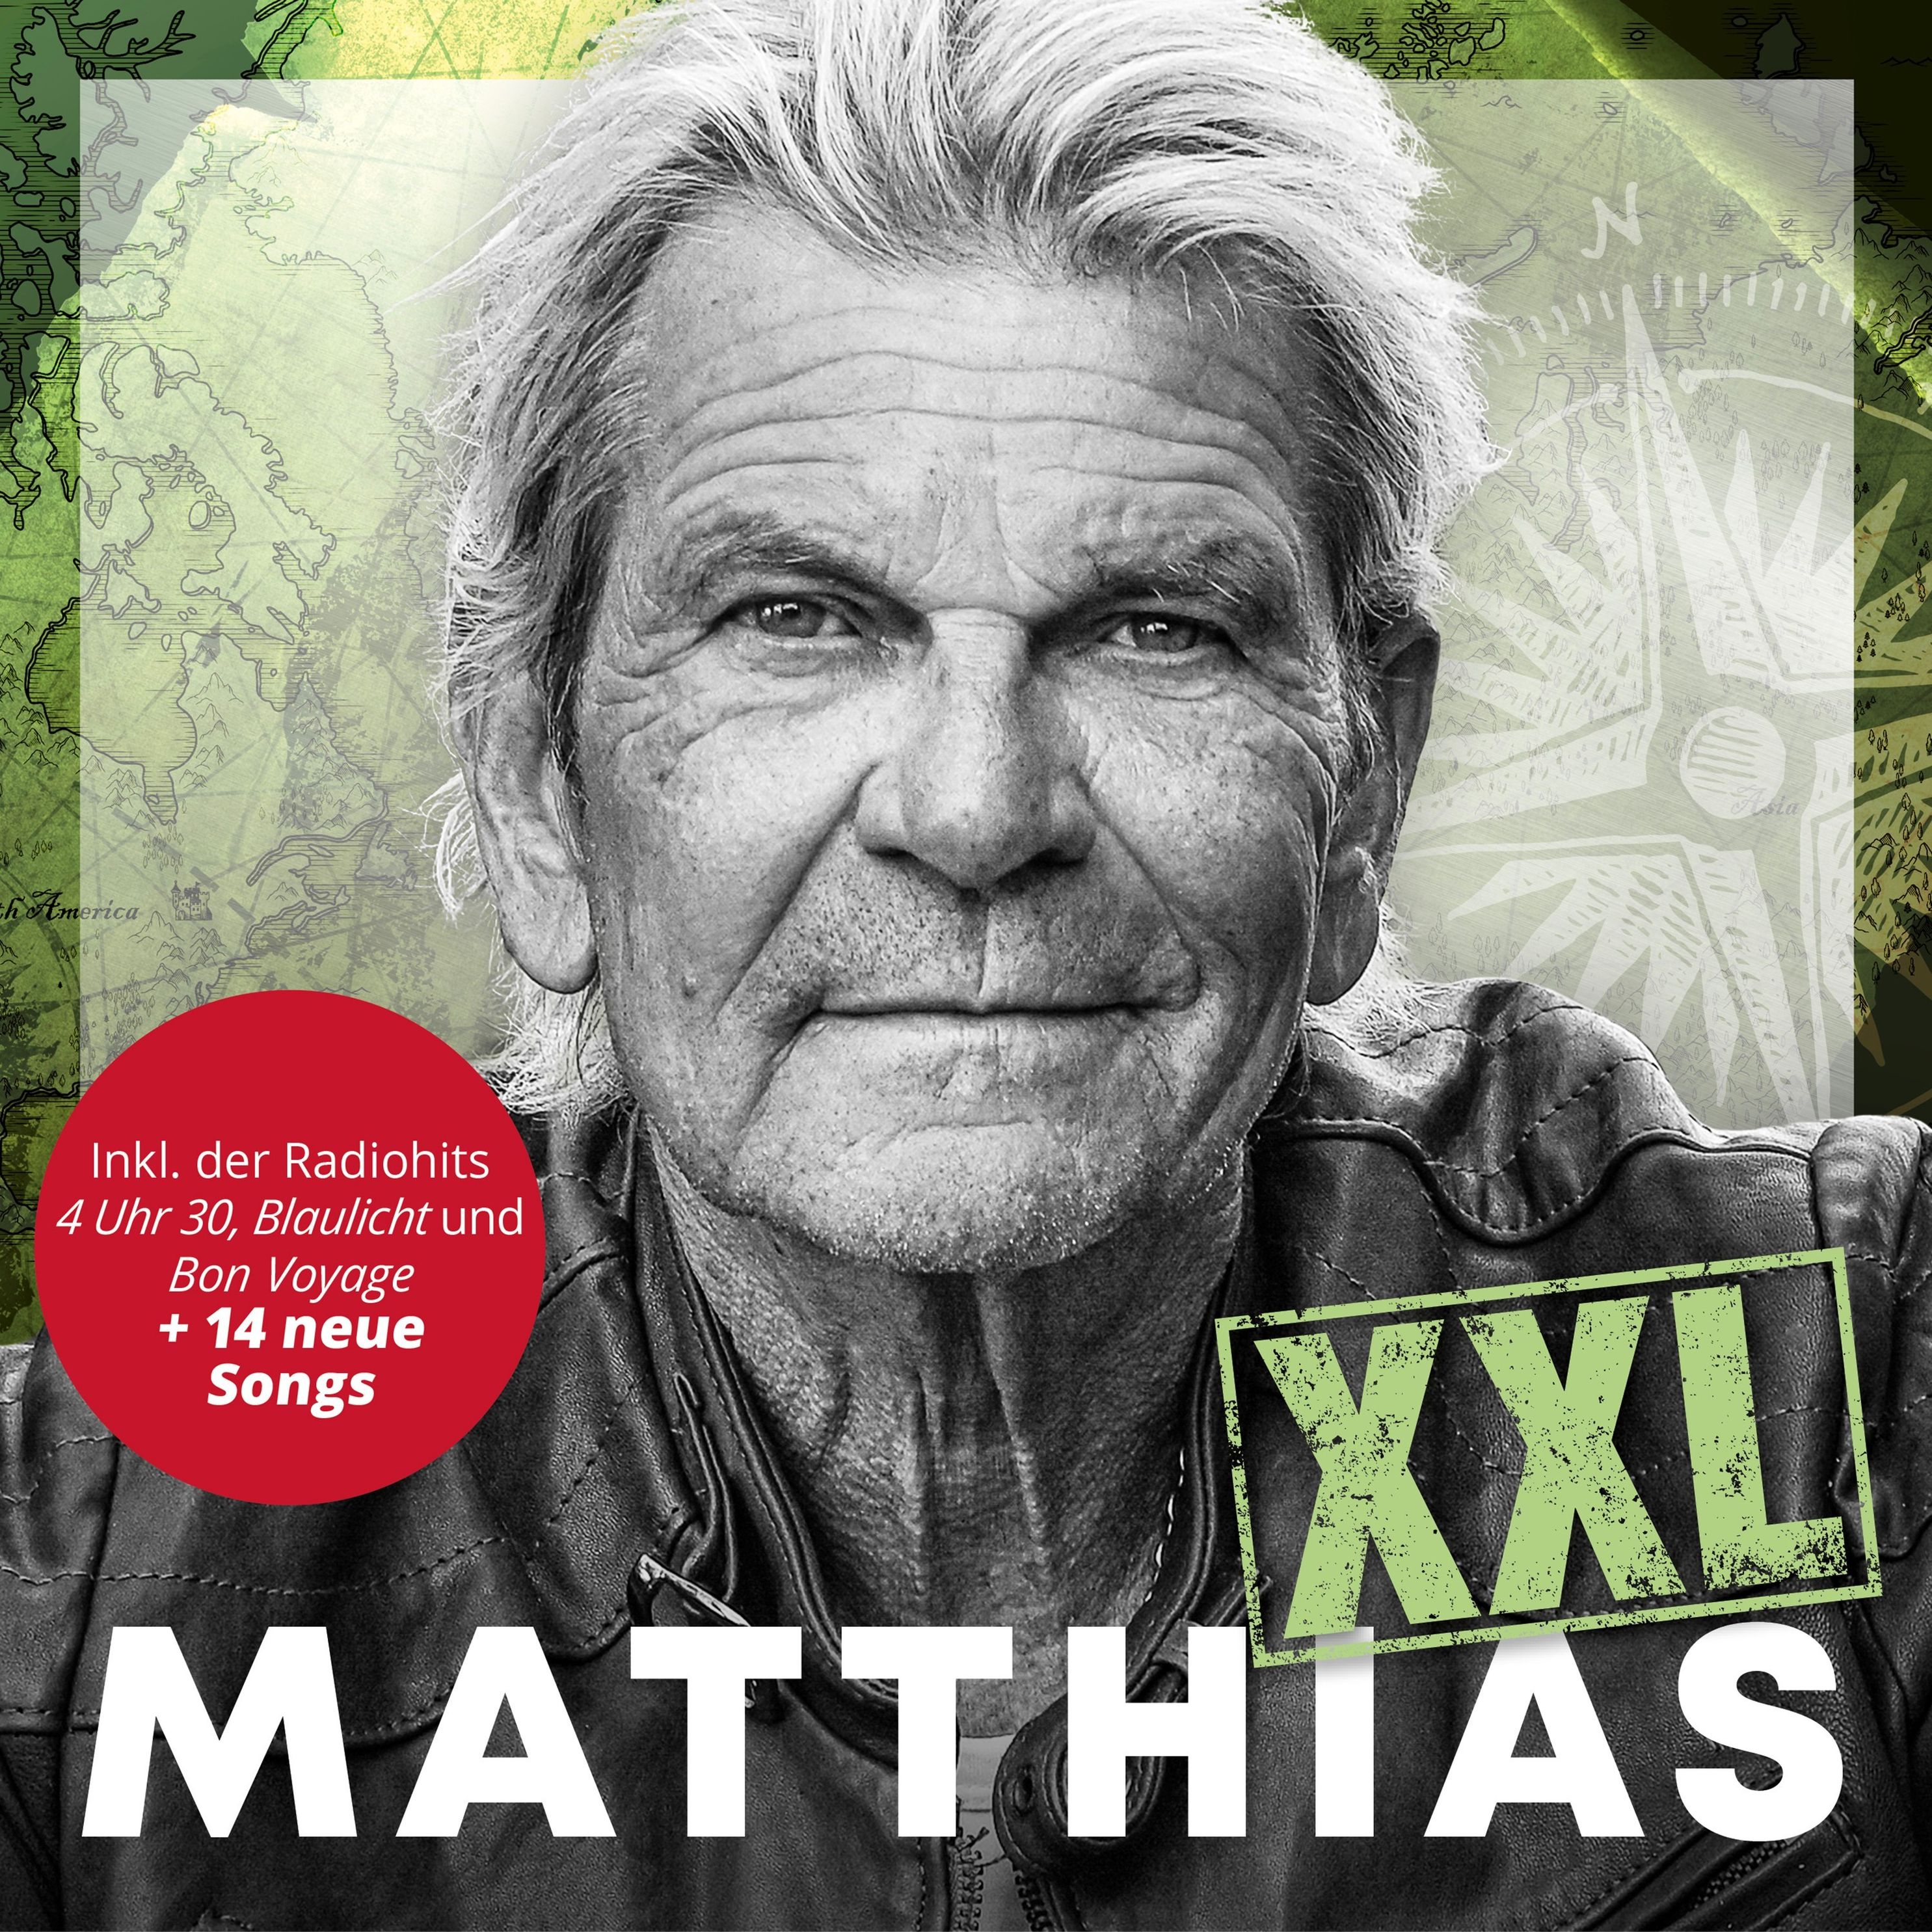 MATTHIAS XXL CD von Matthias Reim bei Weltbild.de bestellen